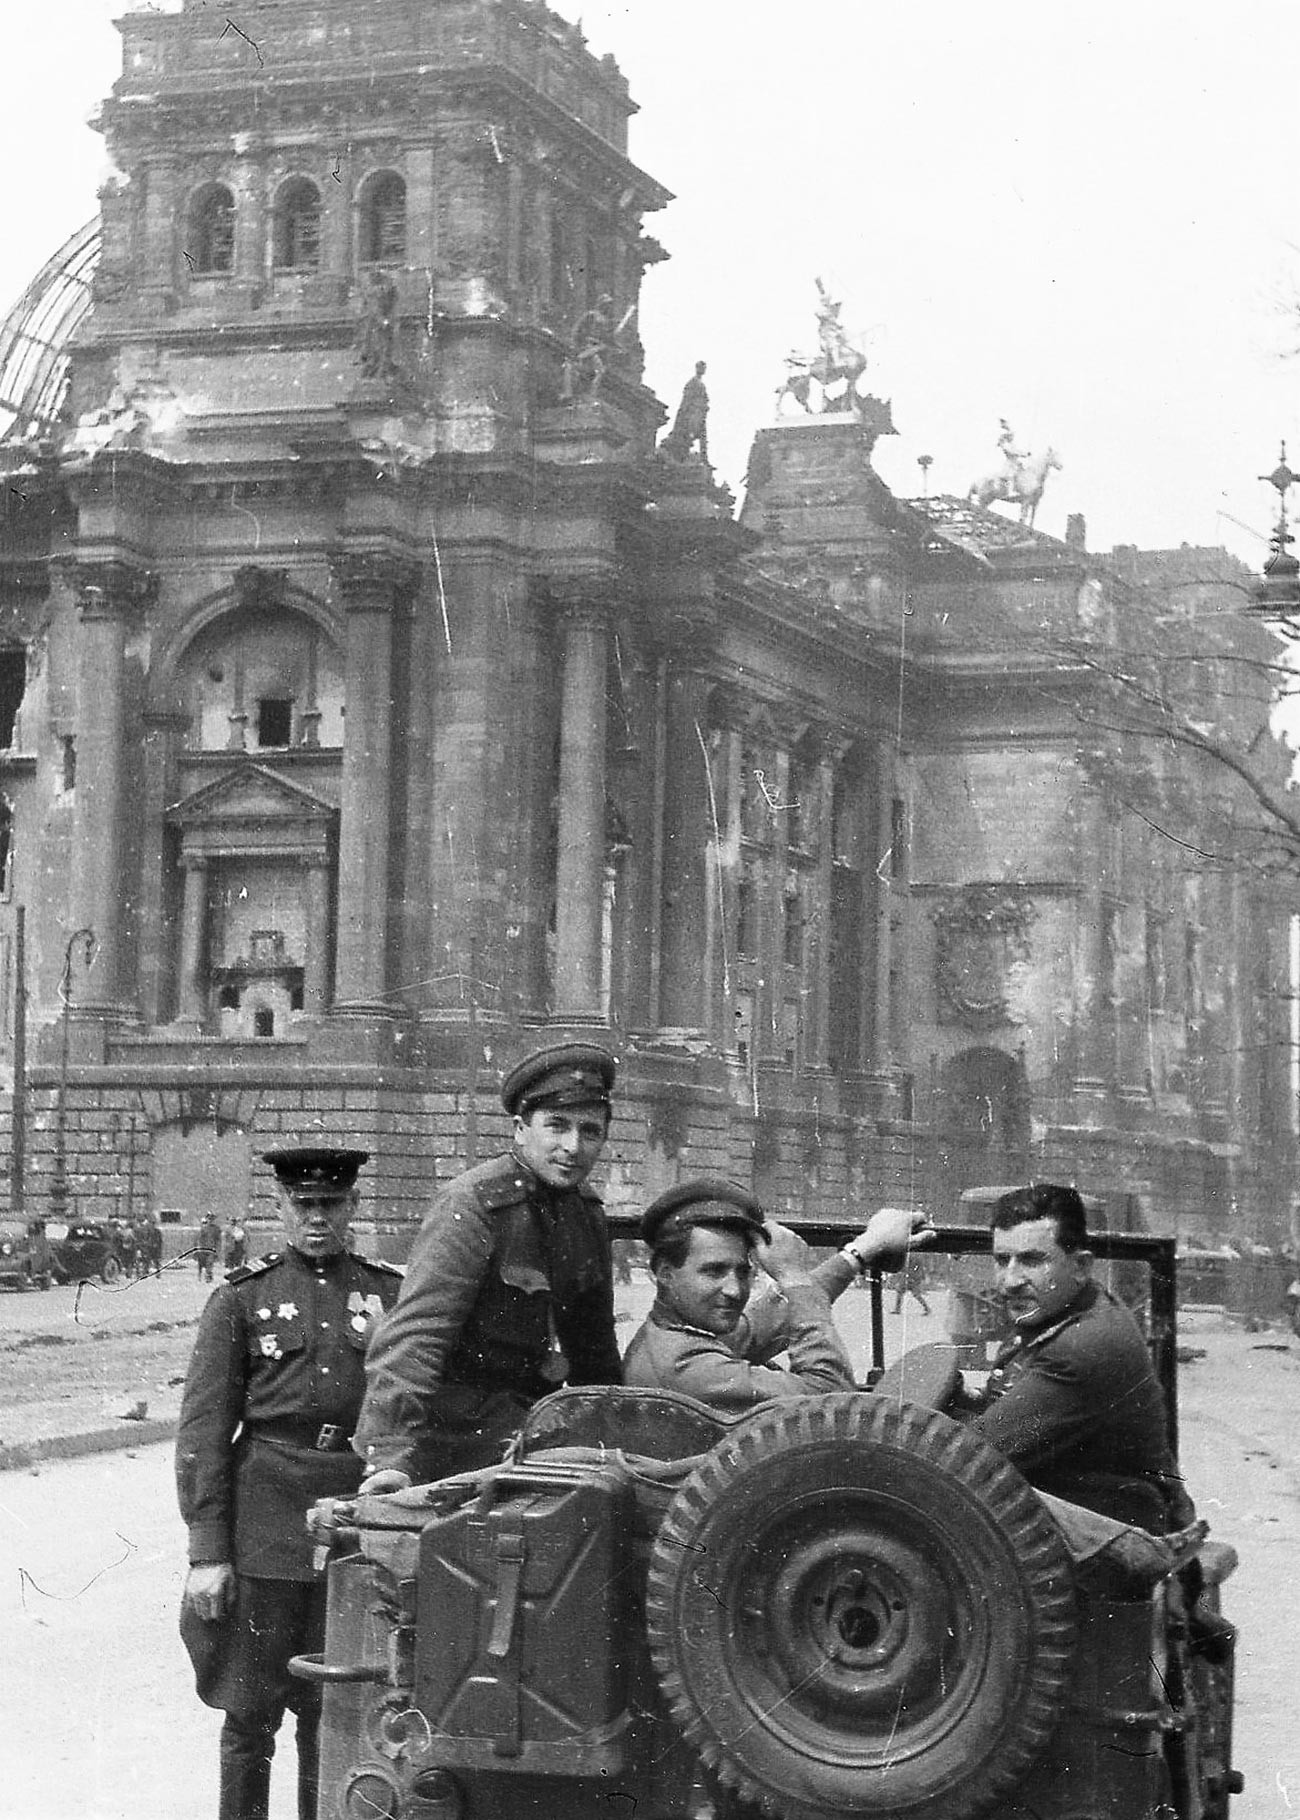 En el edificio del Reichstag, Berlín, 1945 De izquierda a derecha: El General Mayor Matvei Vaintrub, el escritor Konstantín Símonov, el camarógrafo Iliá Arons.